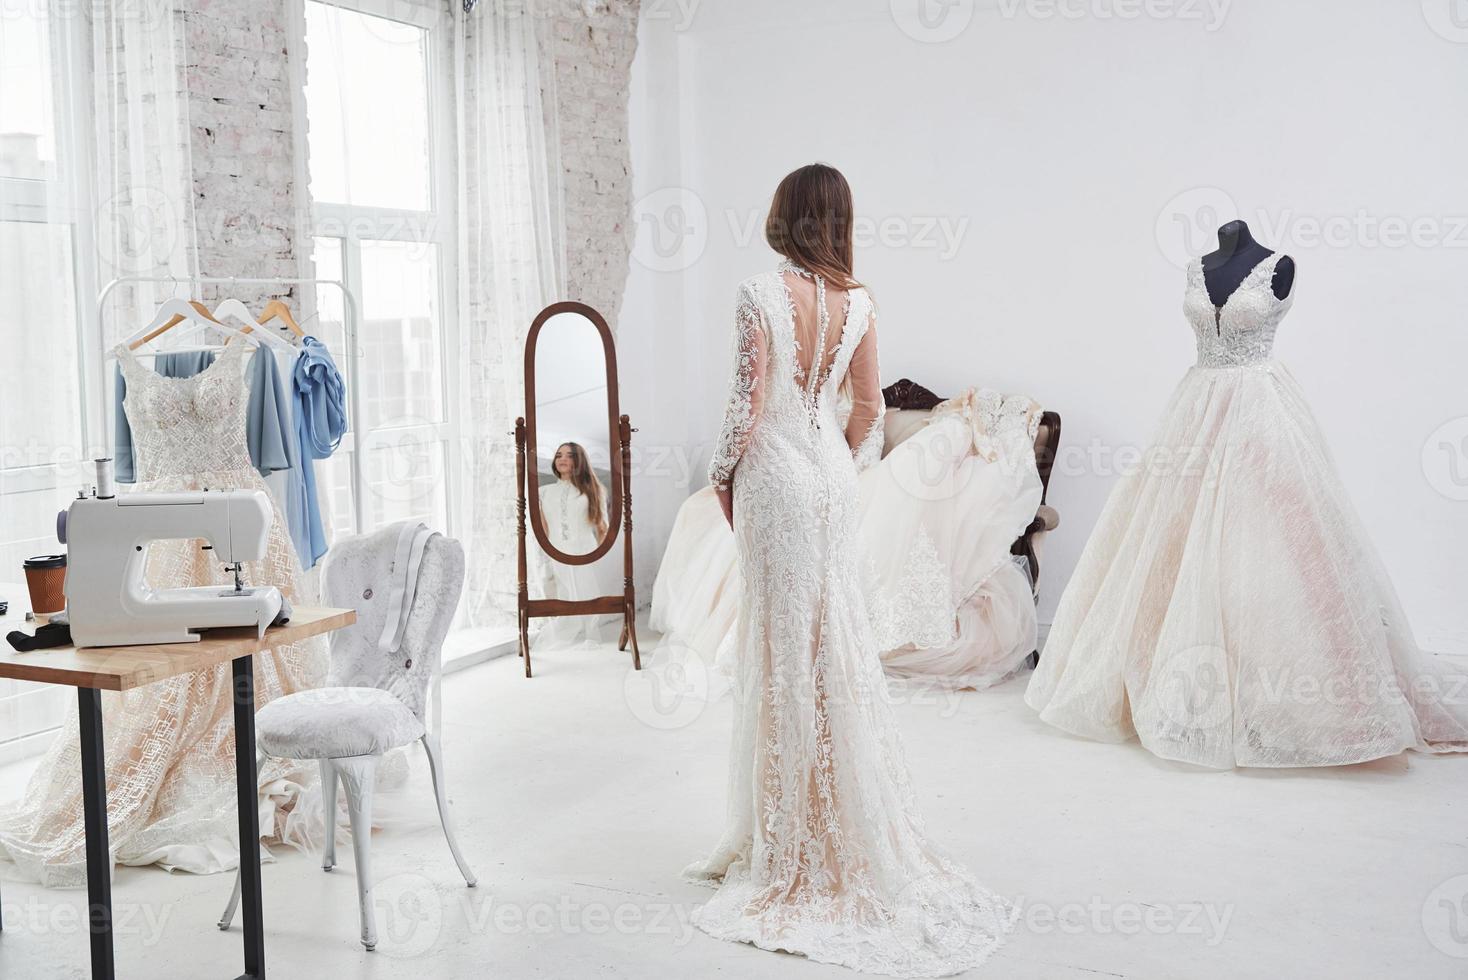 se montrer et se regarder dans le miroir. le processus d'essayage de la robe dans l'atelier de vêtements fabriqués à la main photo